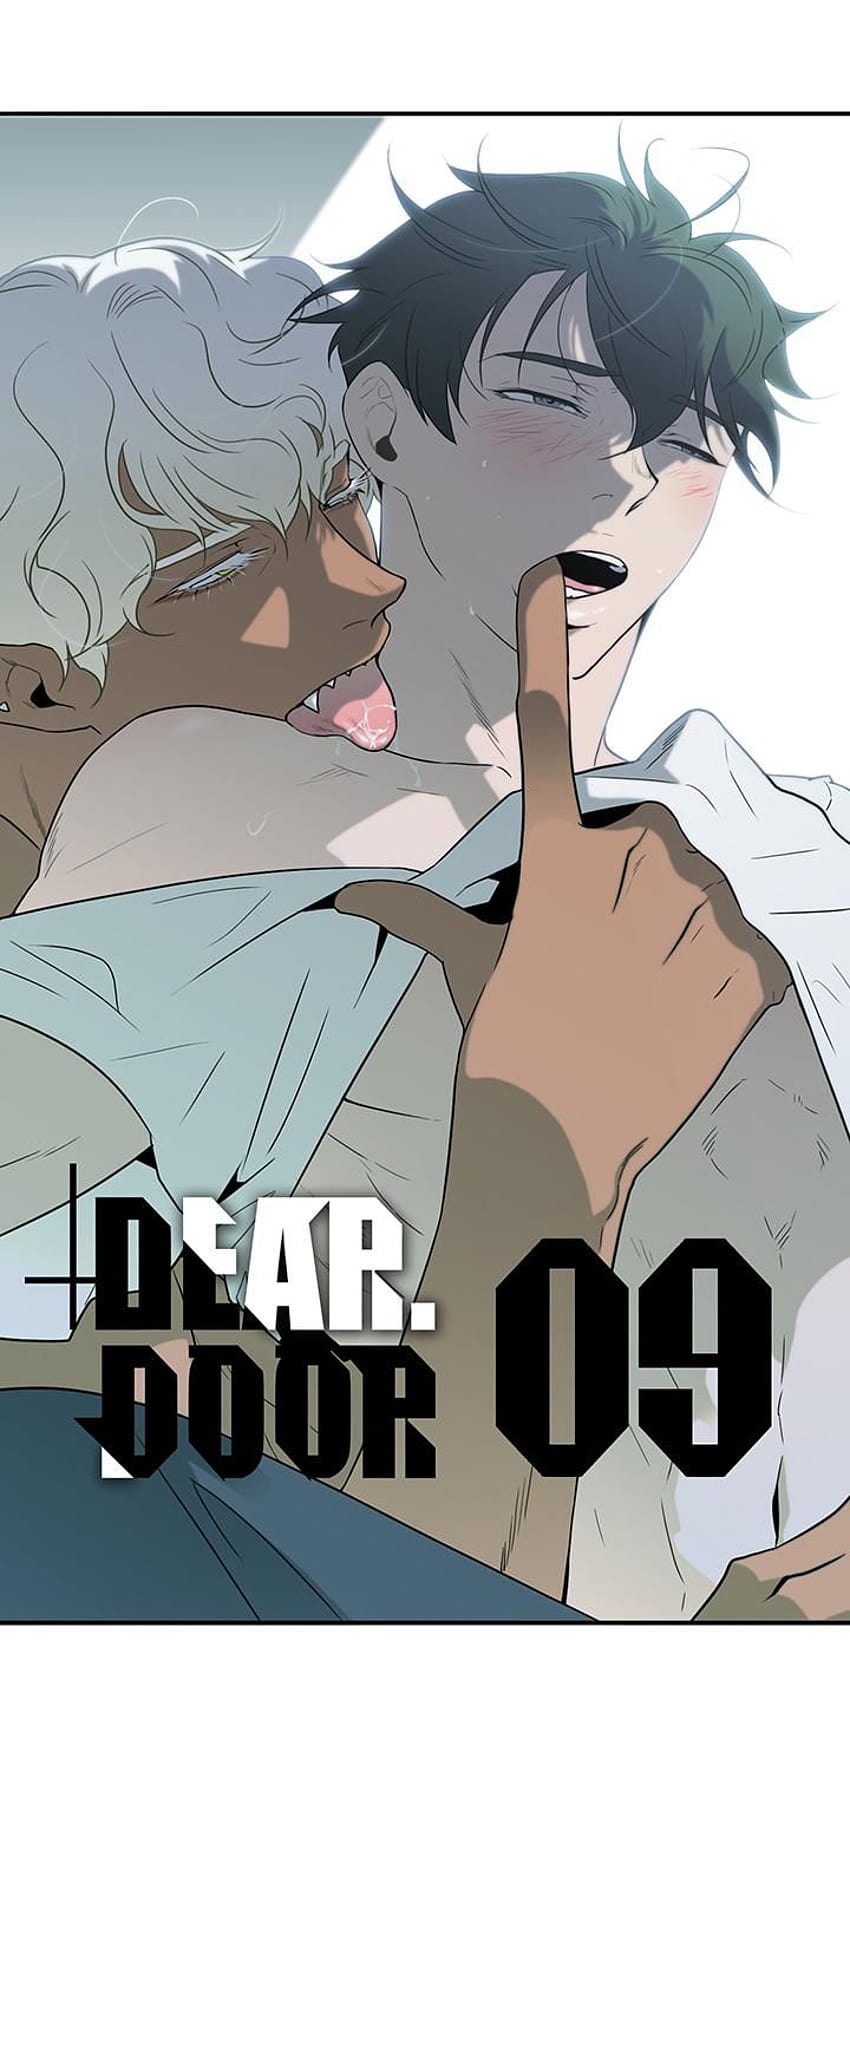 Dear Door By Pluto Dear Door Manga Hd Phone Wallpaper Pxfuel